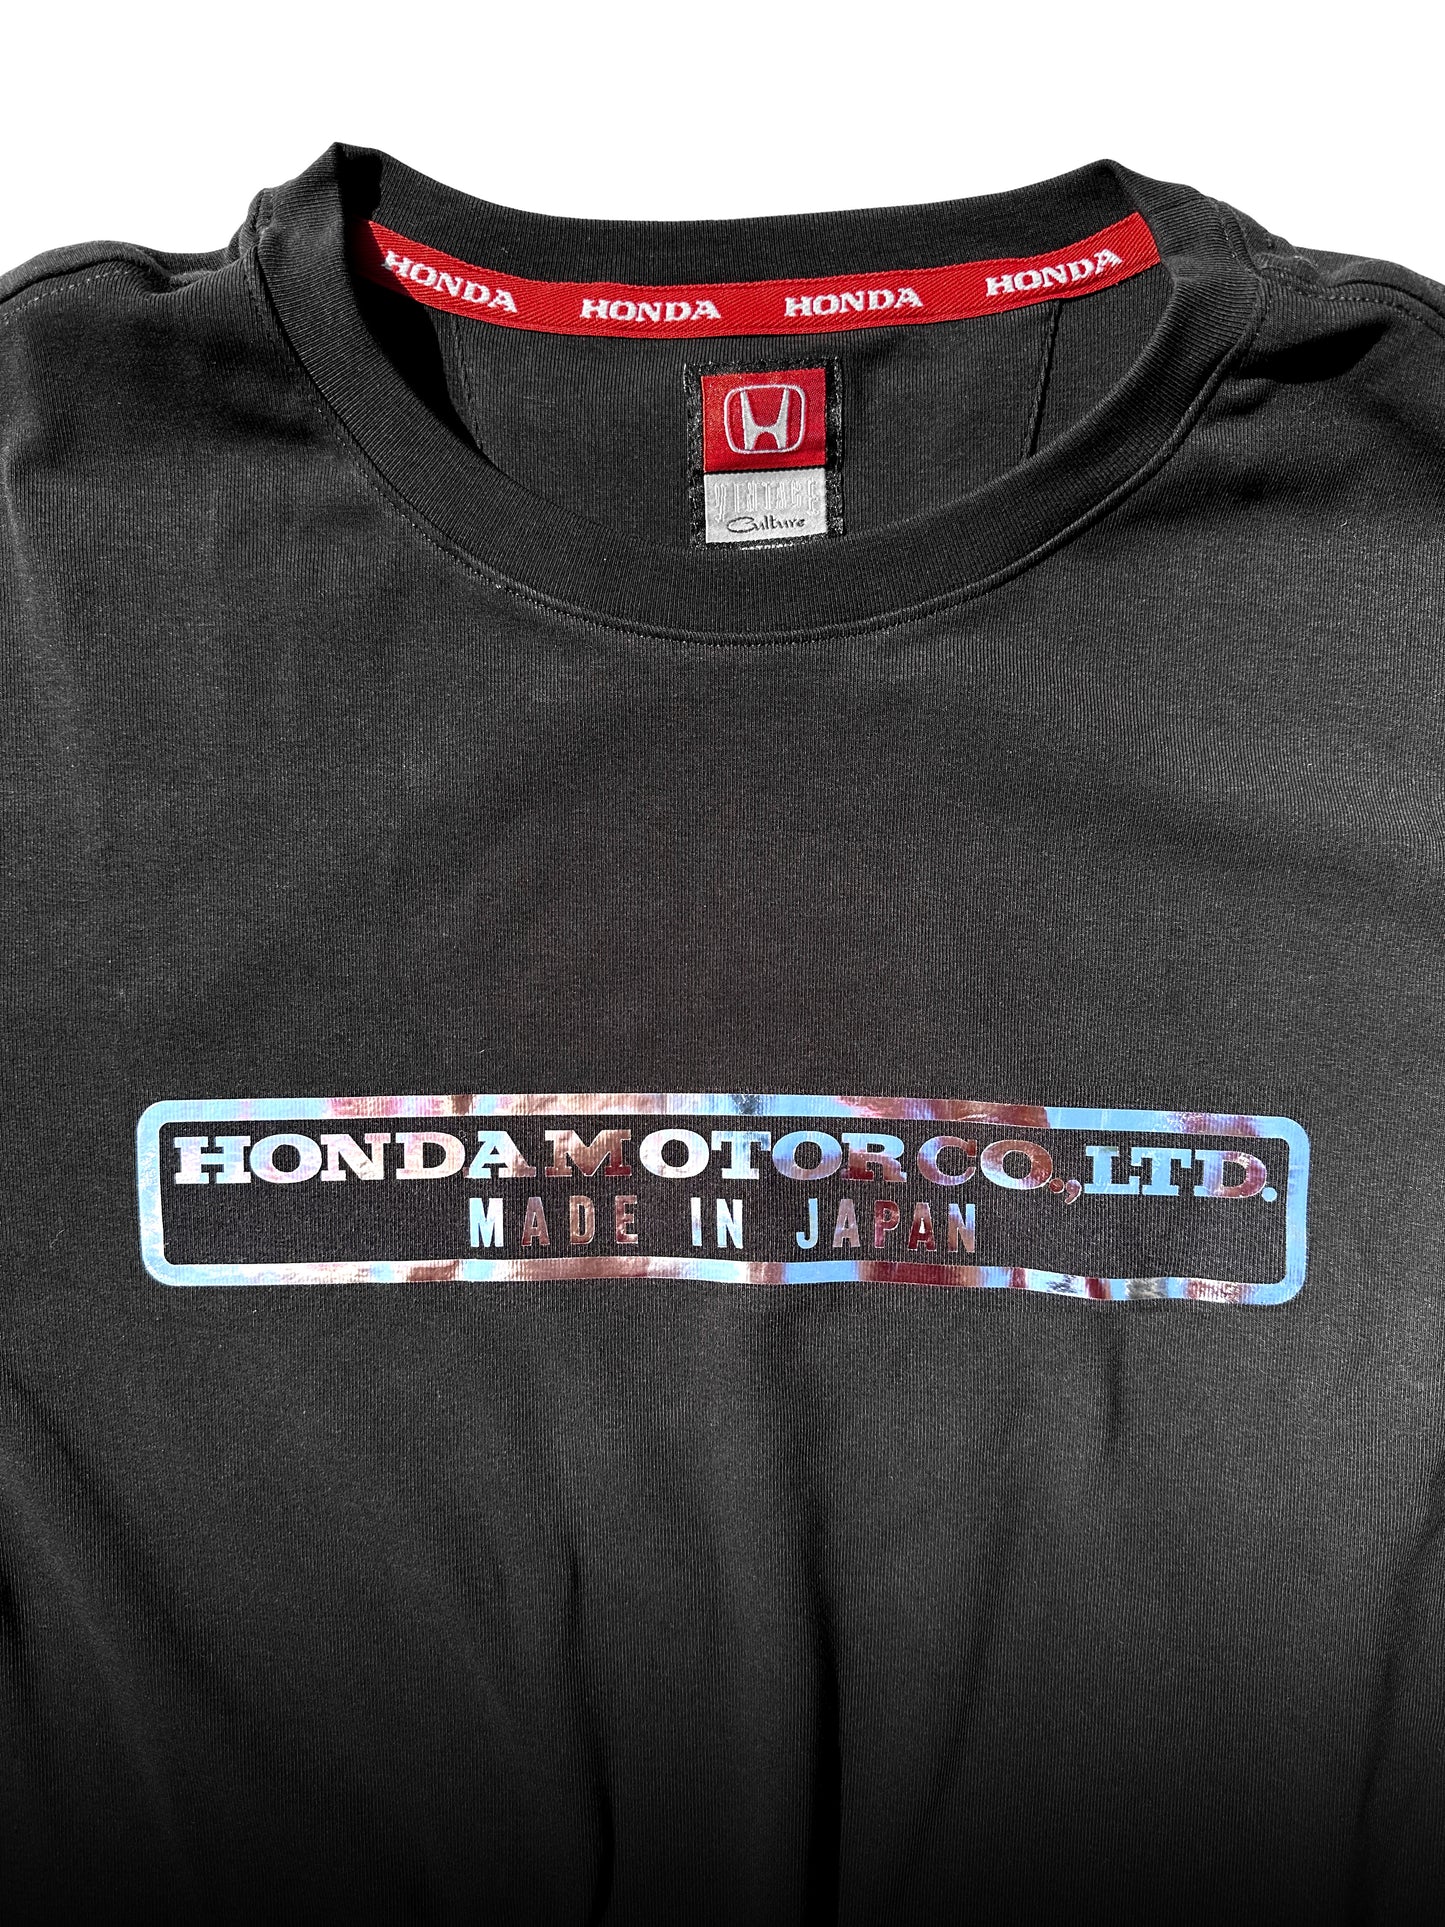 Honda Motor Co. - Made in Japan Long Sleeve Tee